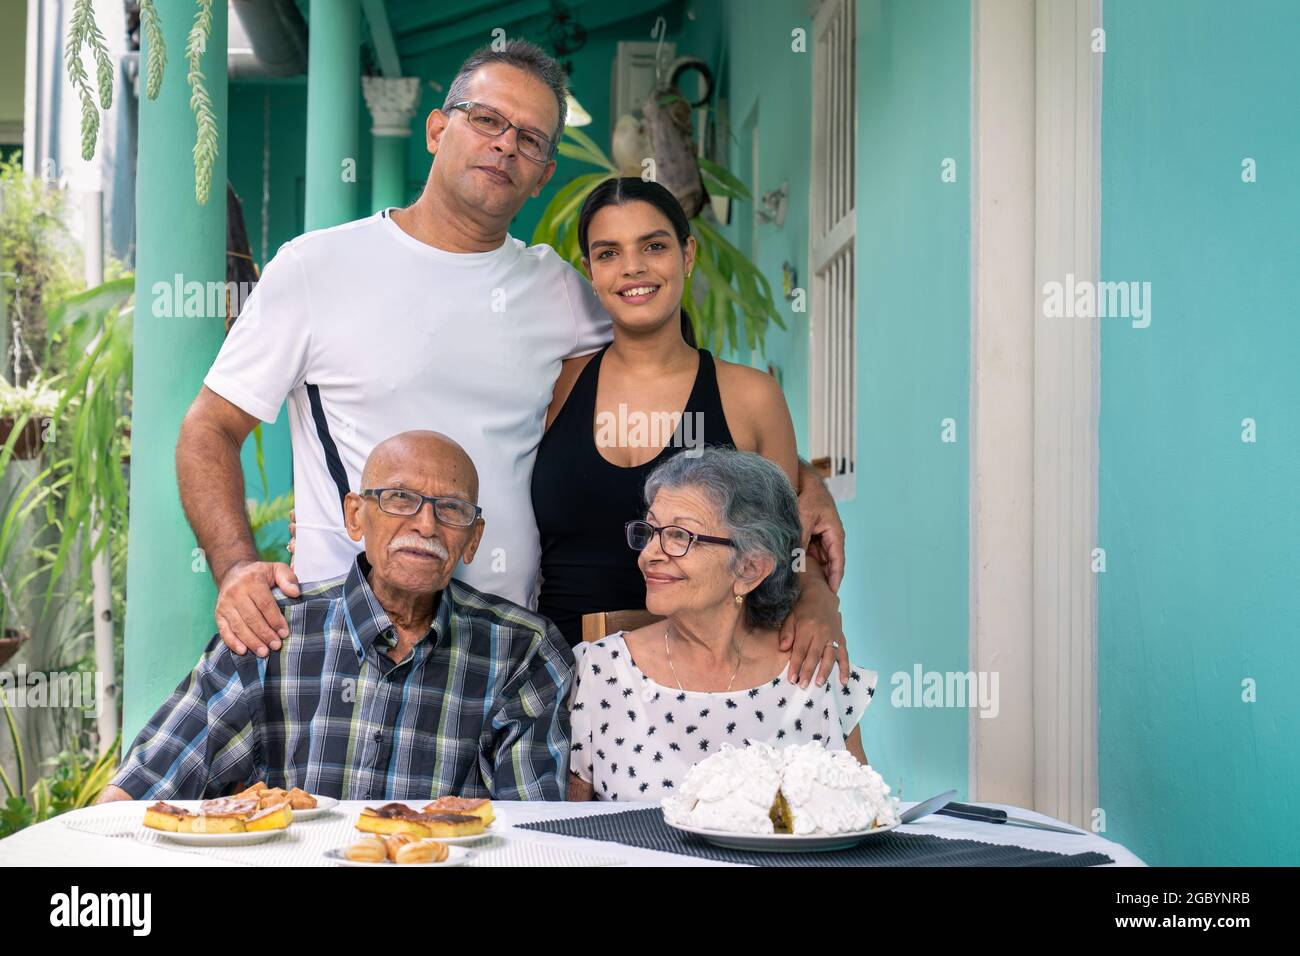 Ein älteres Paar mit Brille sitzt an einem Tisch und ein Mann und eine junge Frau stehen hinter den älteren Menschen Stockfoto